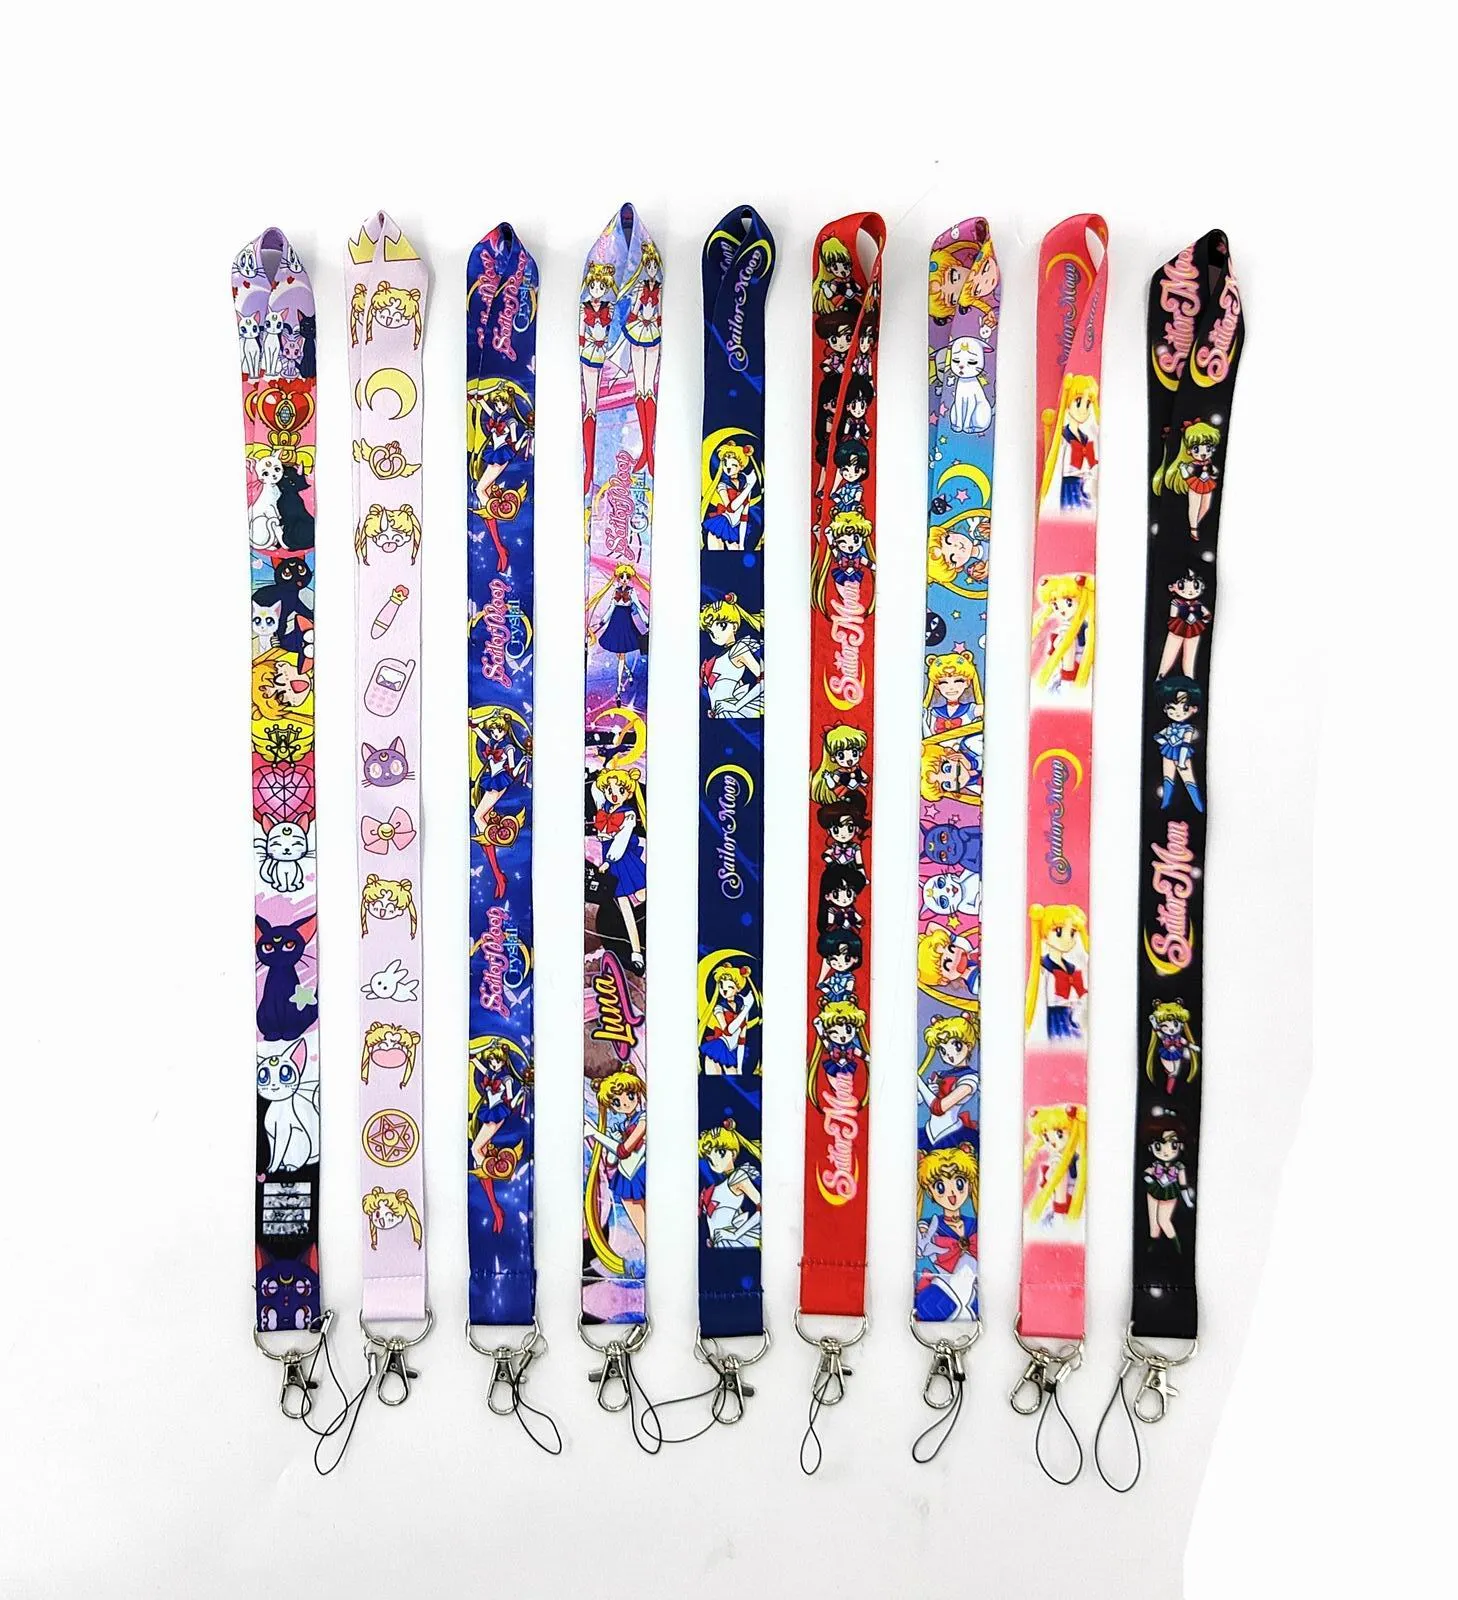 Celas do telefone celular Charms key colheding tiras de chaves de chaves de identificação Mobile New Hot 10pcs Japão Anime Cartoon Girl Gift Wholesal 2022